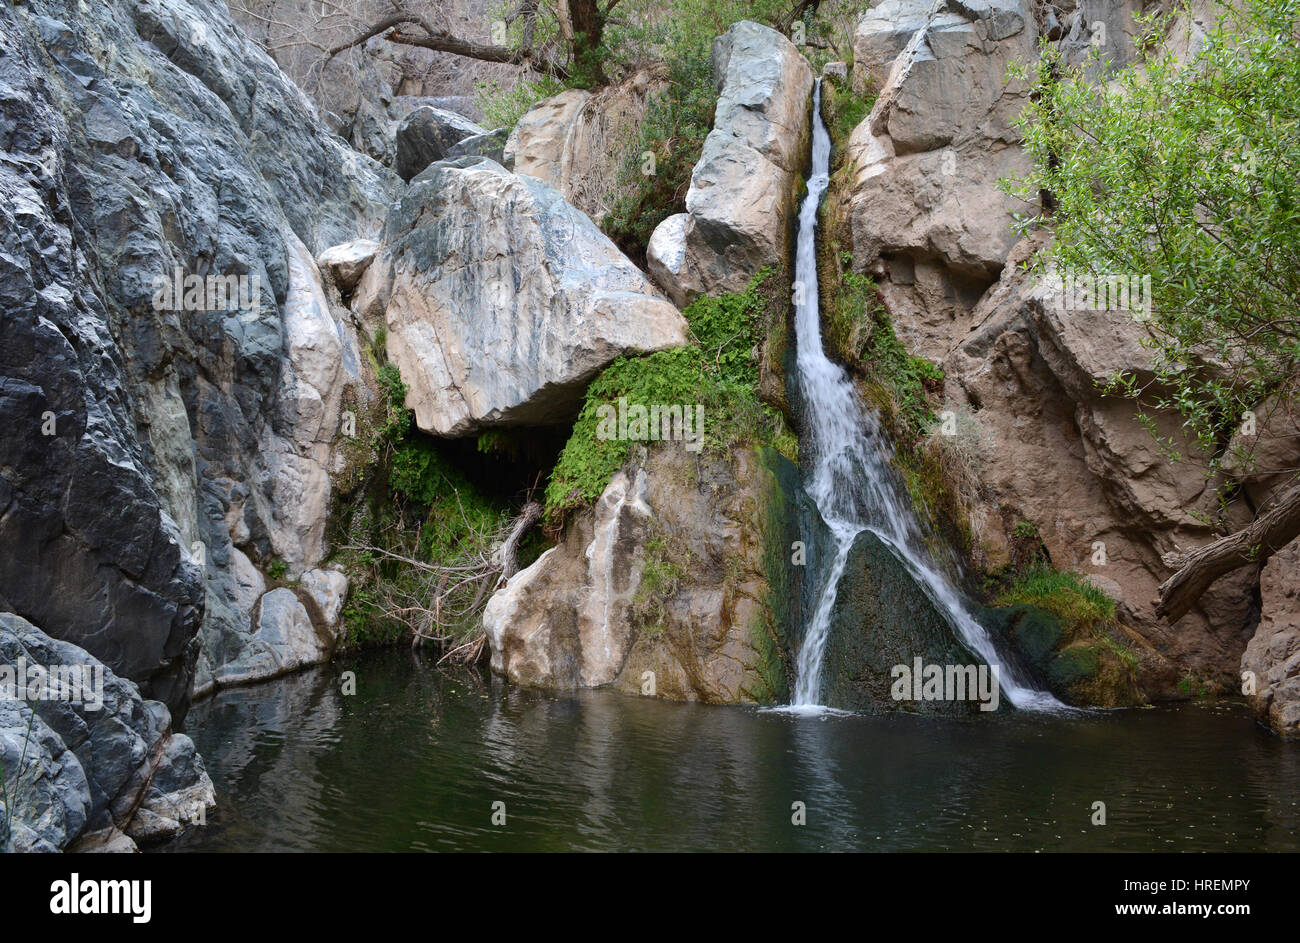 Un coup horizontal de Darwin Falls, une petite mais belle chute d'eau alimenté par une source dans les rochers et végétation luxuriante. Banque D'Images